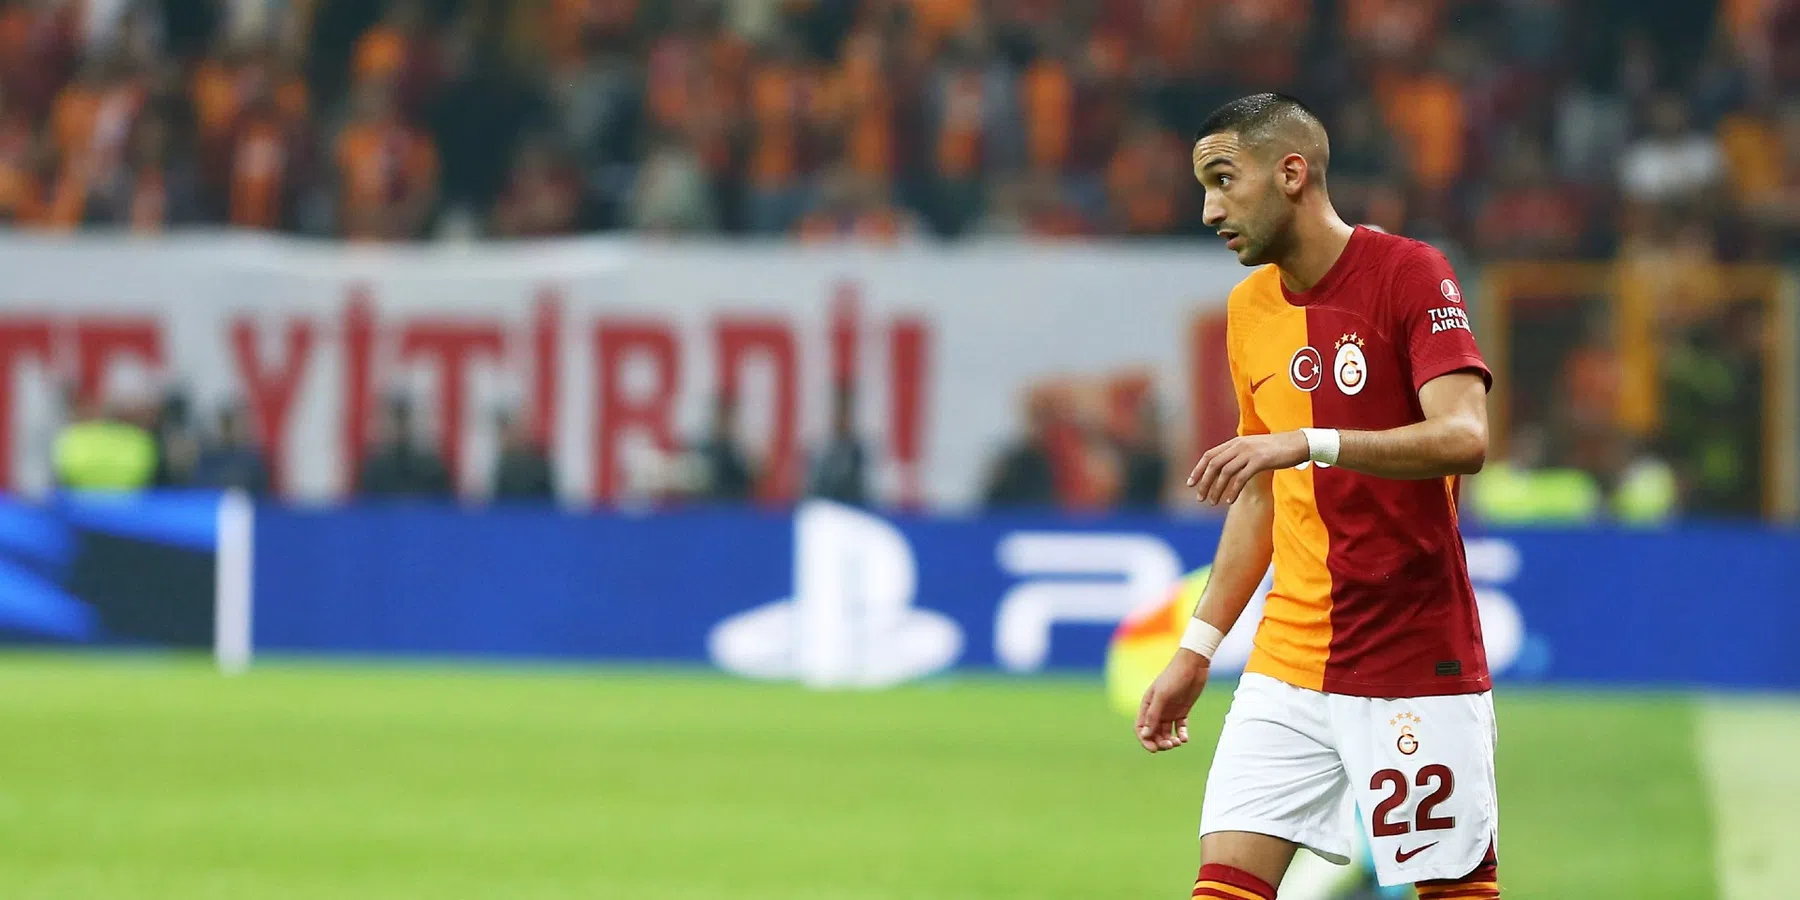 LIVE: Galatasaray met Ziyech in de basis tegen Kasimpasa